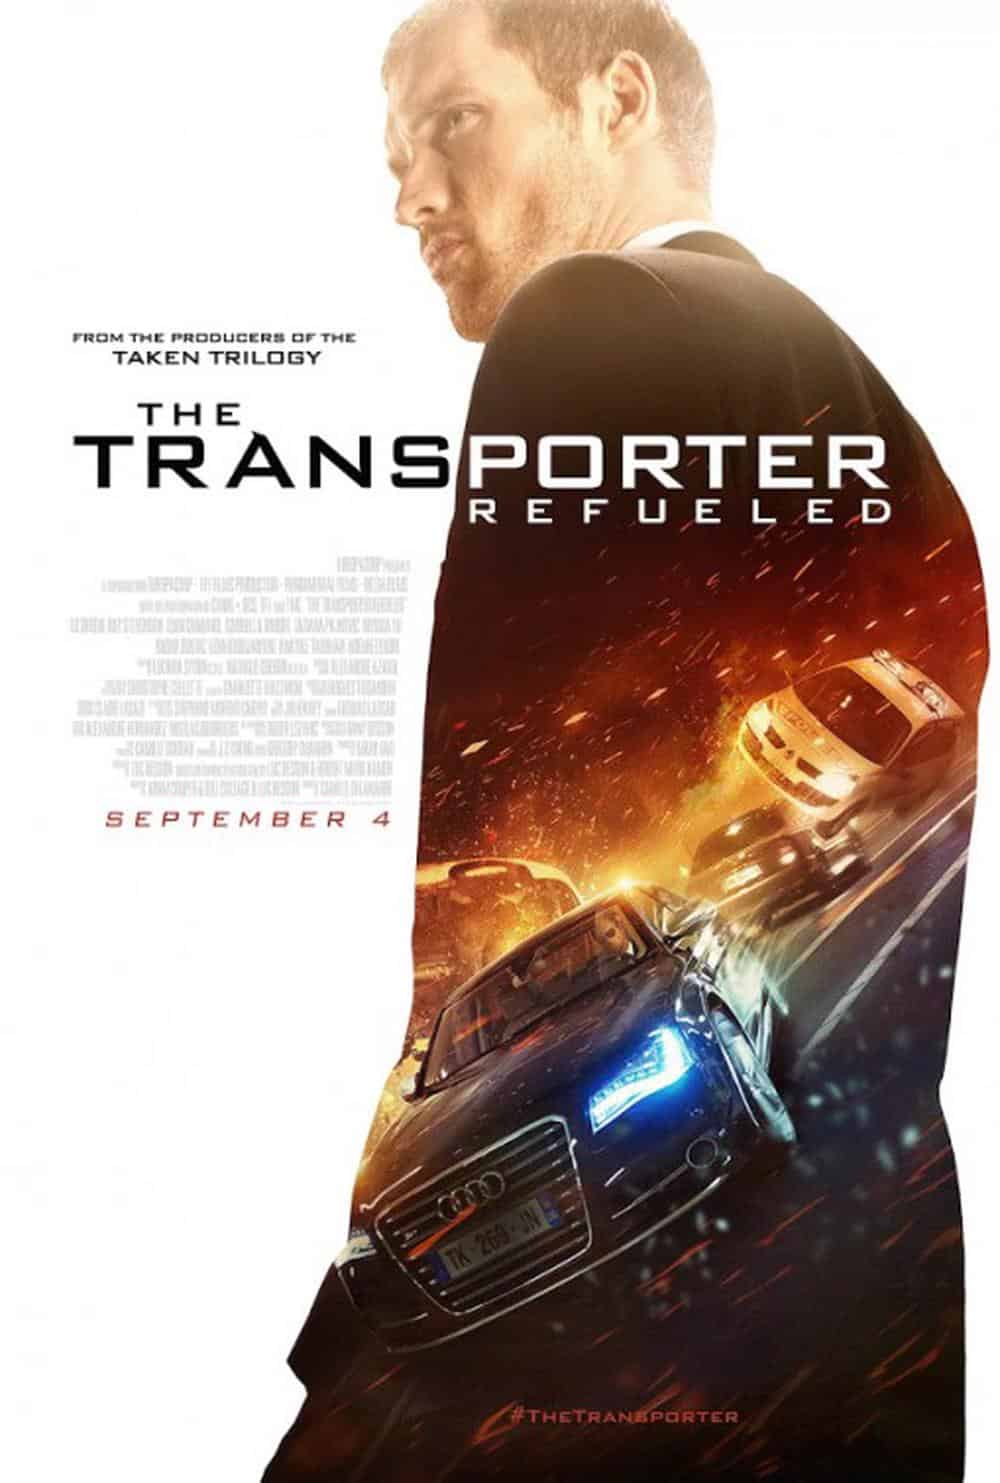 The Transporter Refueled (2015) ทรานสปอร์ตเตอร์ ภาค 4 คนระห่ำคว่ำนรก